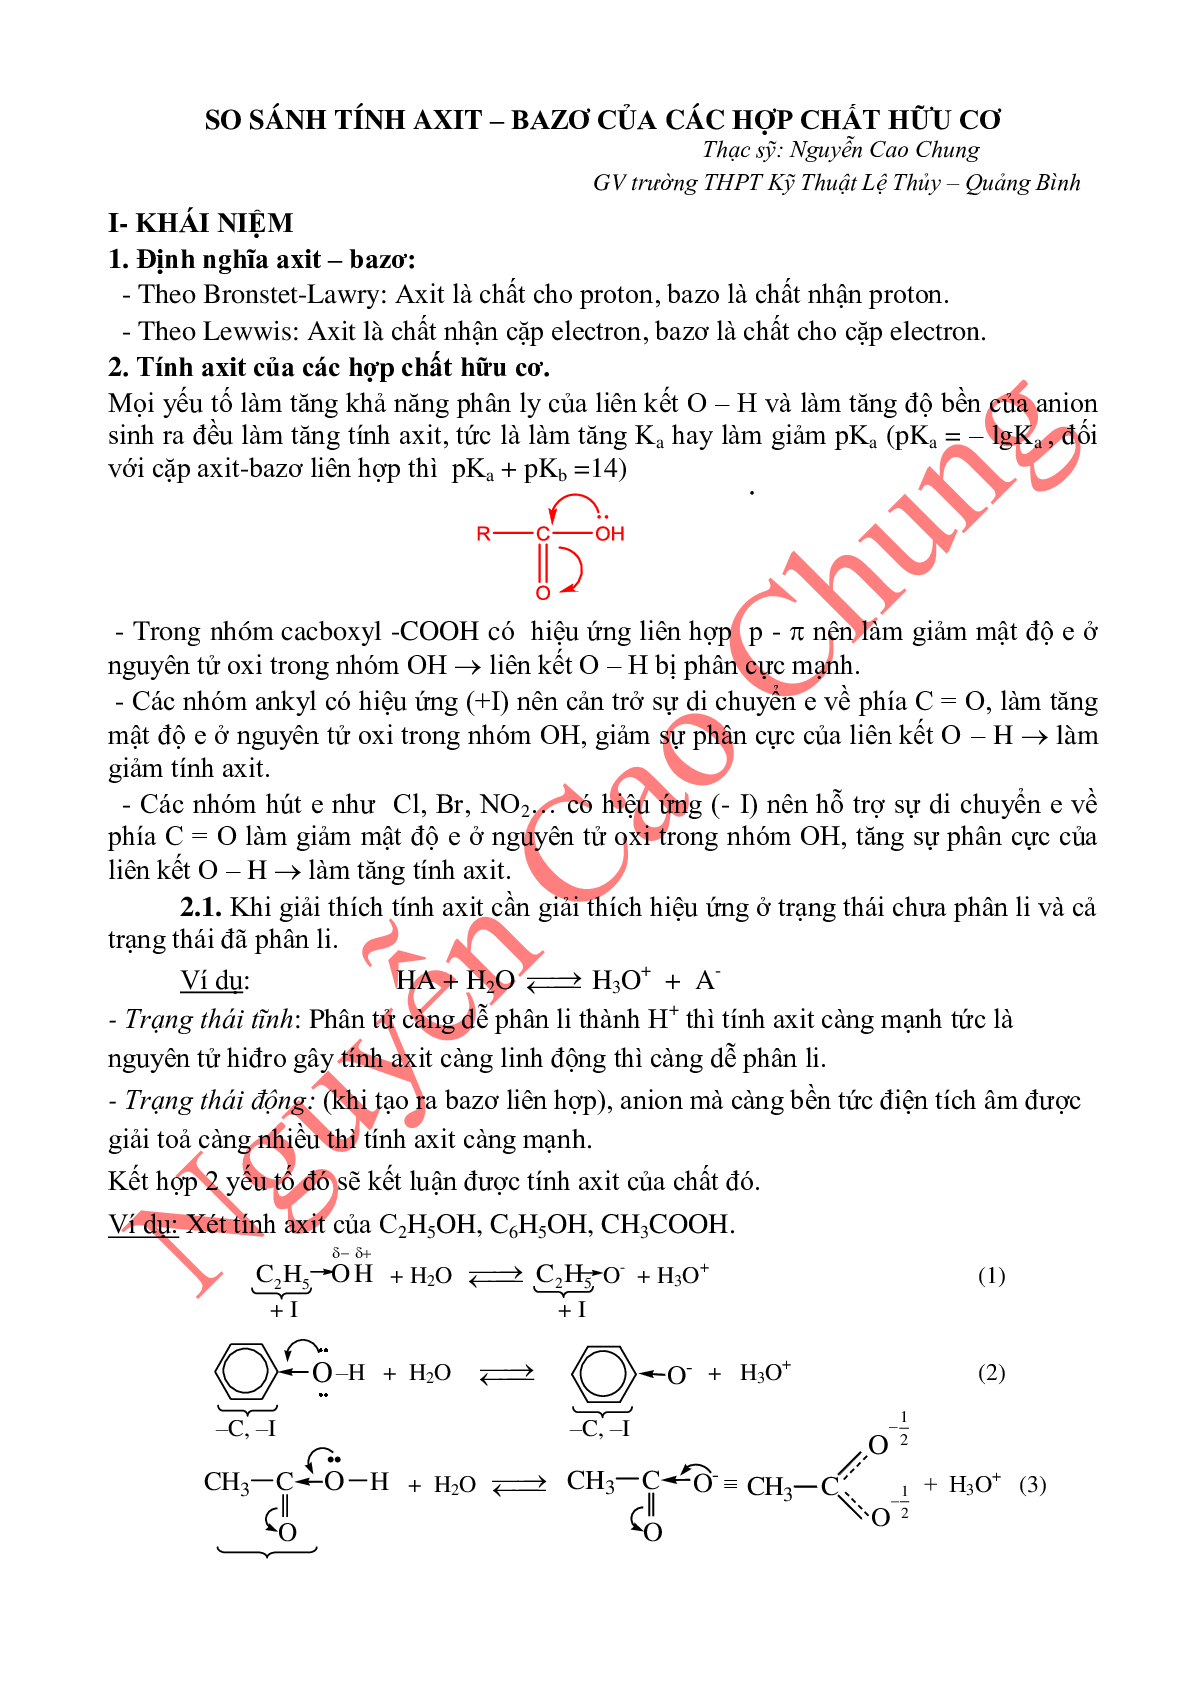 Lý thuyết, bài tập về so sánh tính axit-bazo của các hợp chất hữu cơ (trang 1)